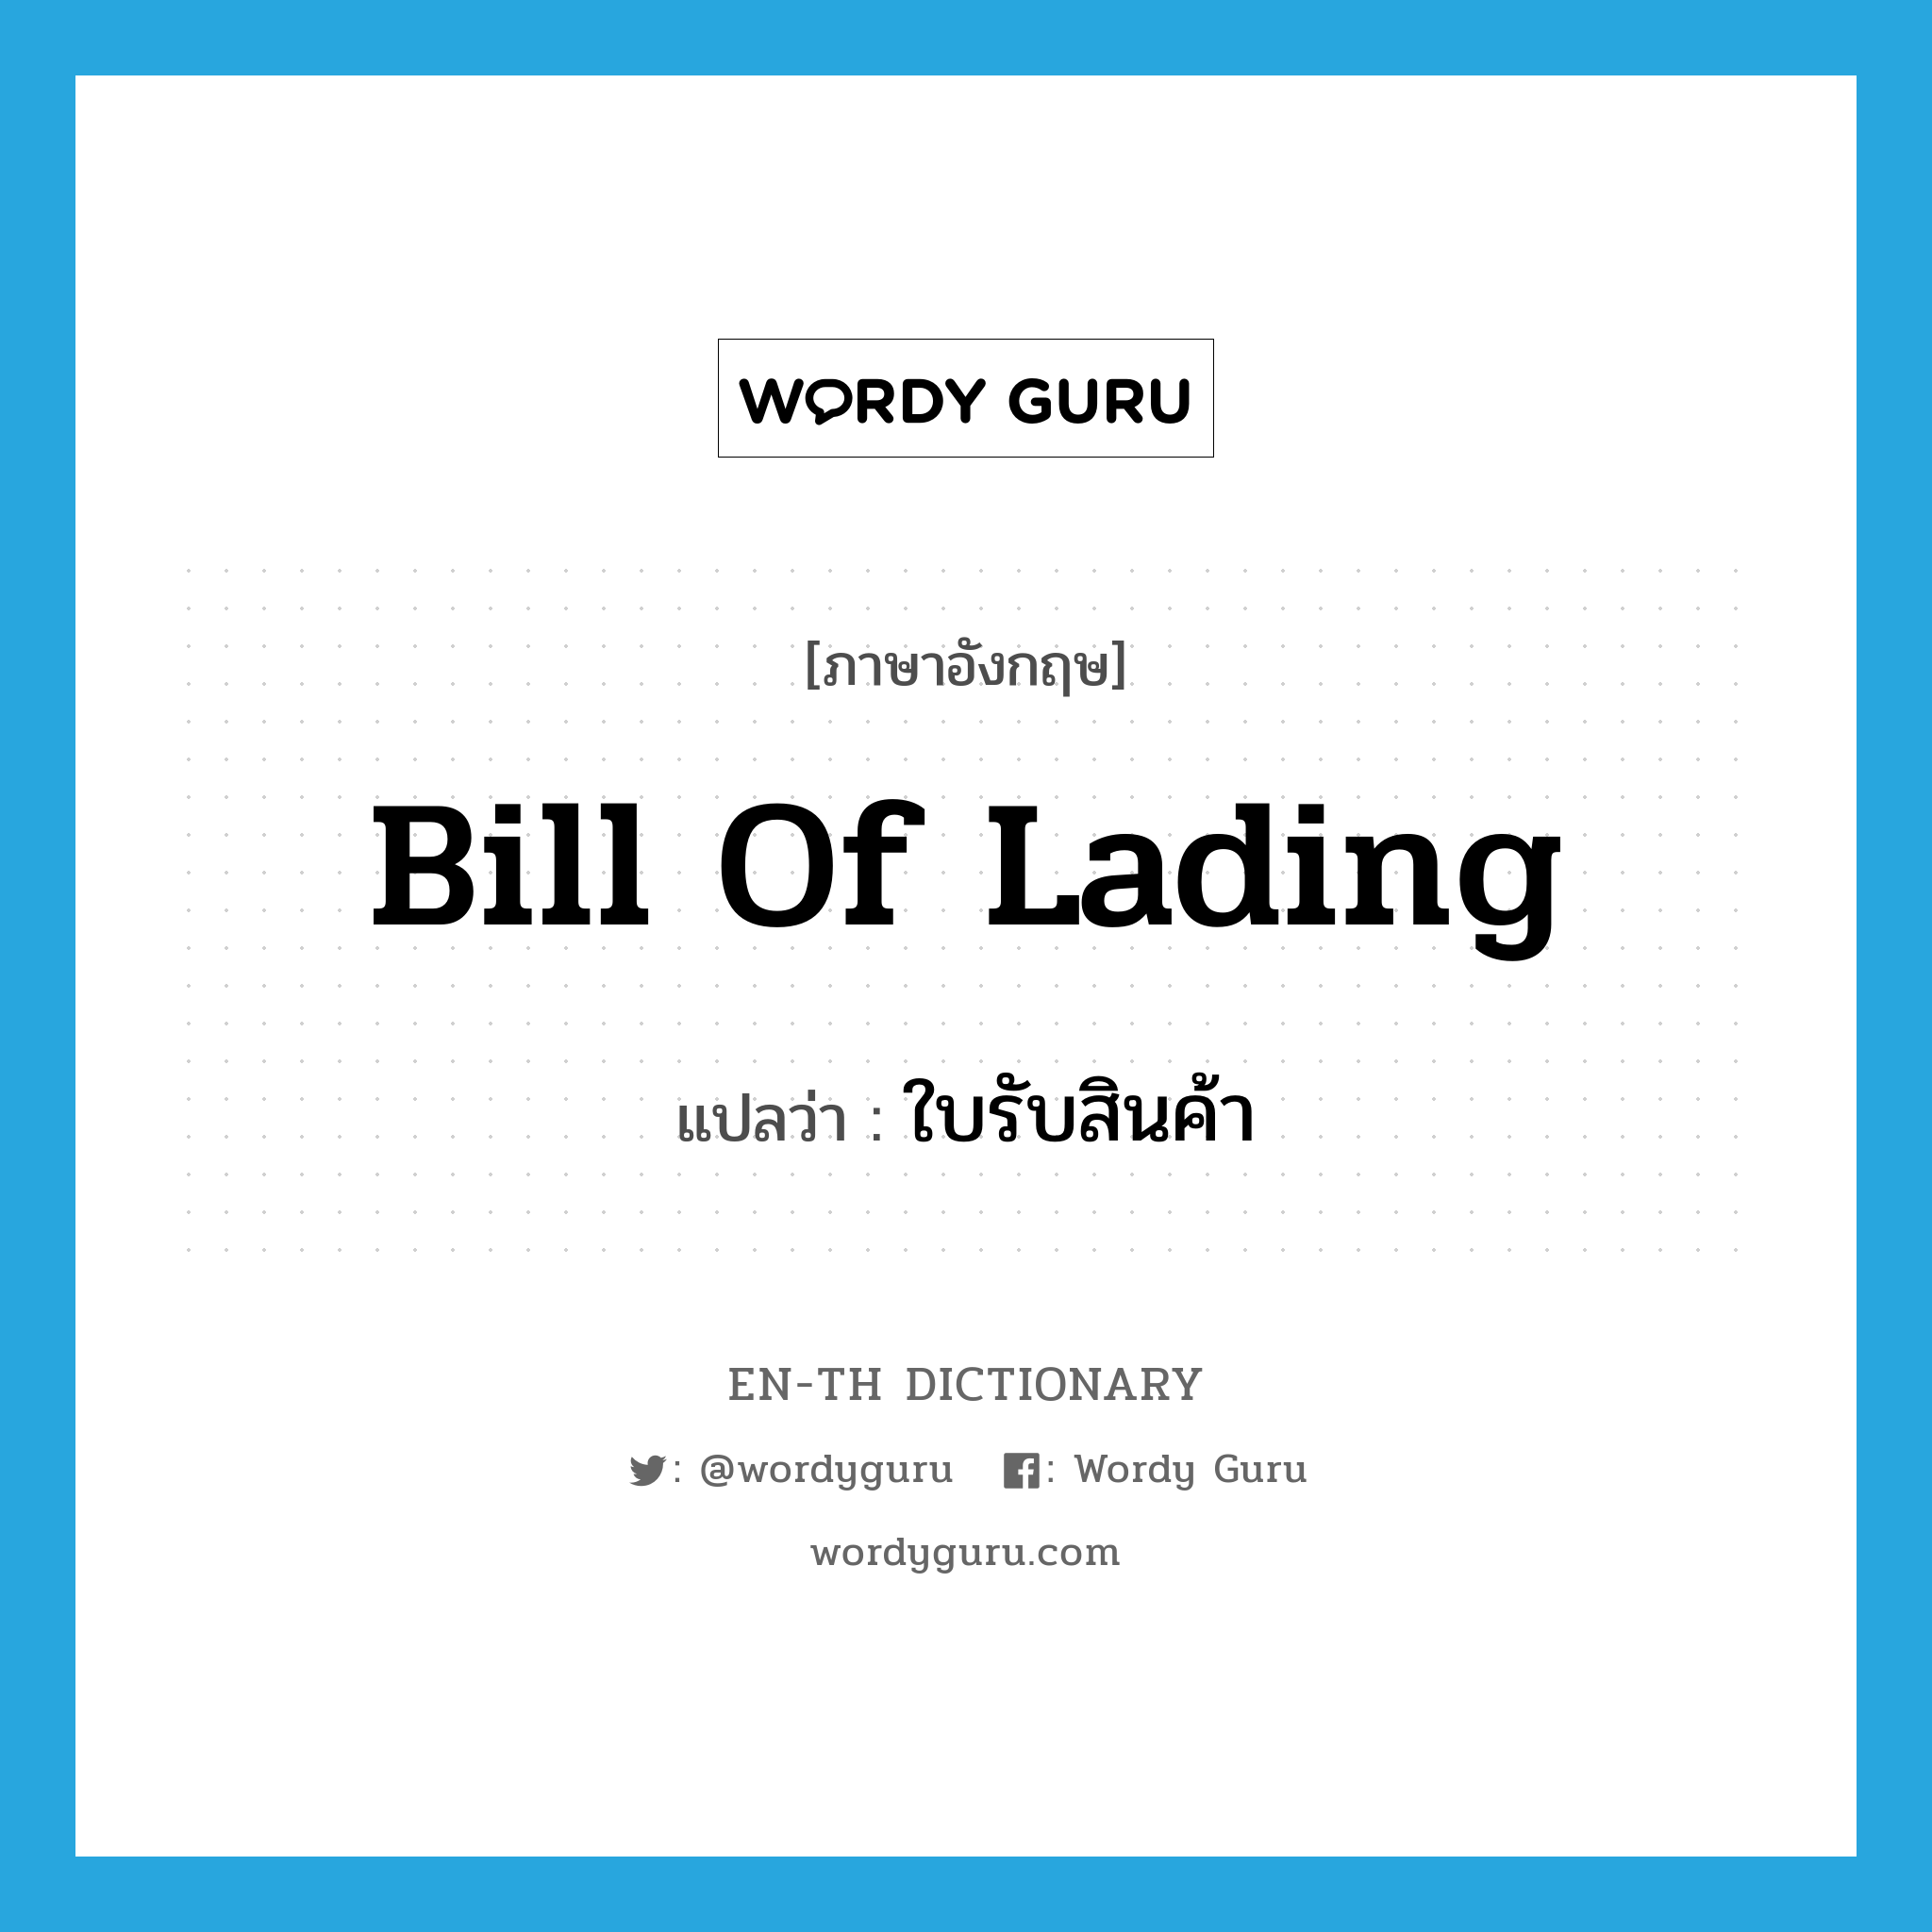 bill of lading แปลว่า?, คำศัพท์ภาษาอังกฤษ bill of lading แปลว่า ใบรับสินค้า ประเภท N หมวด N